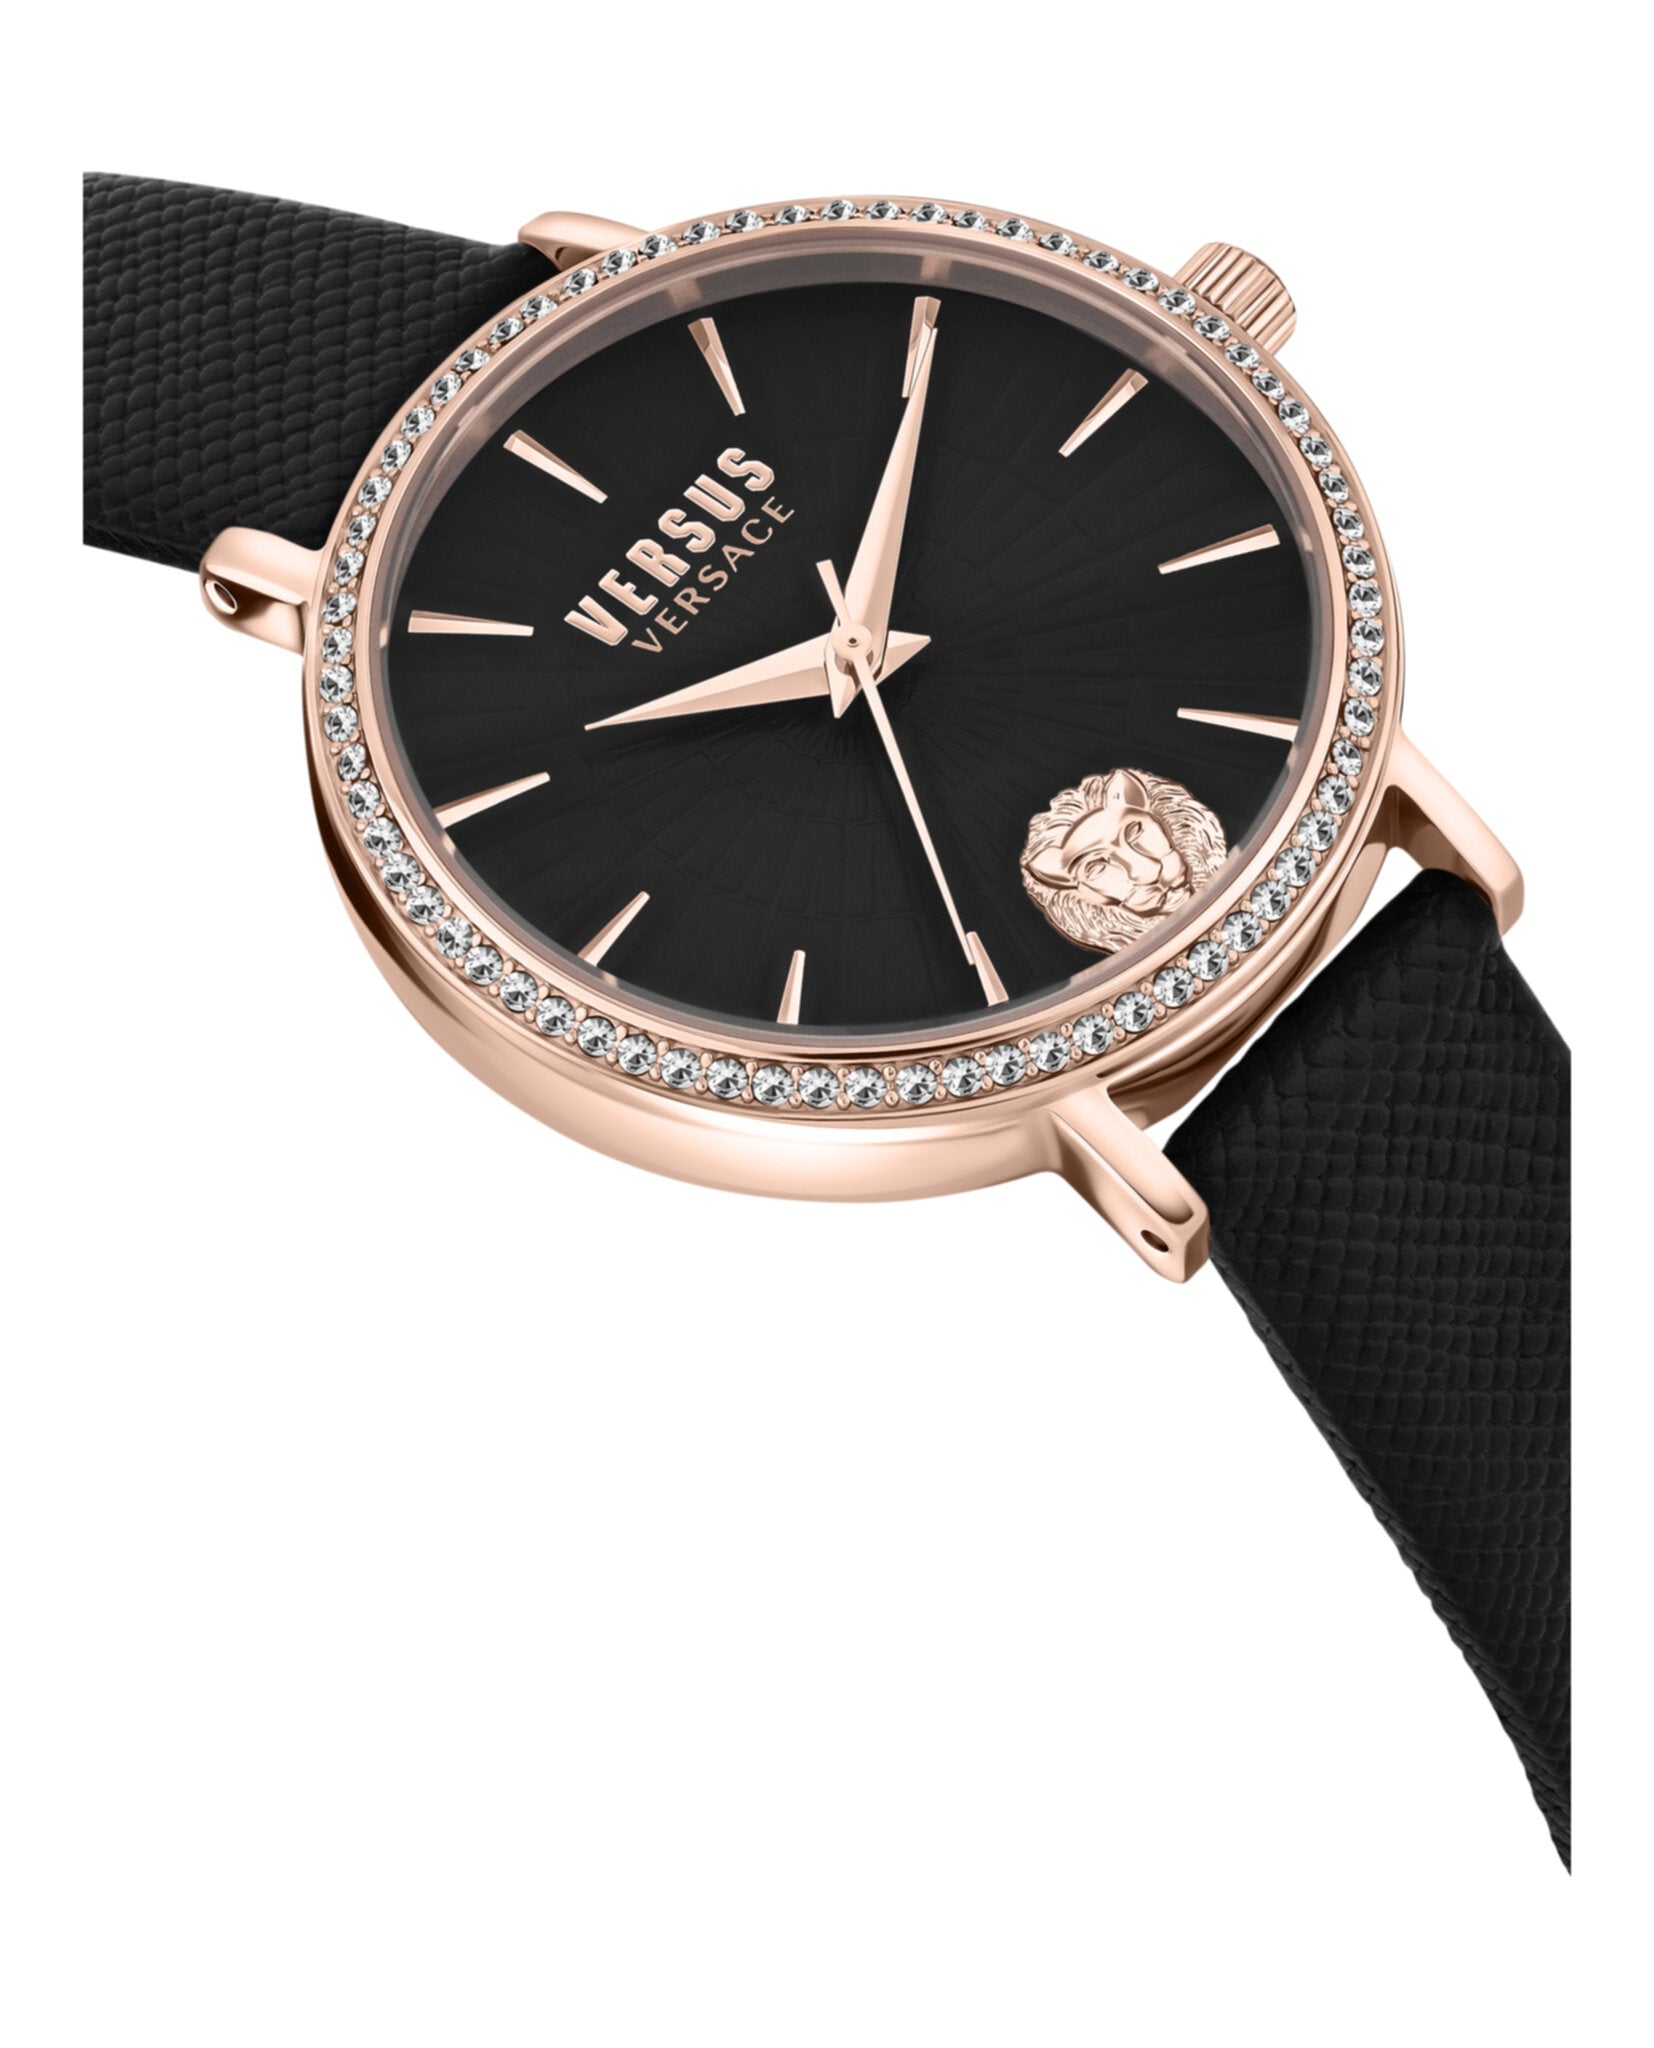 Mar Vista Crystal Leather Watch